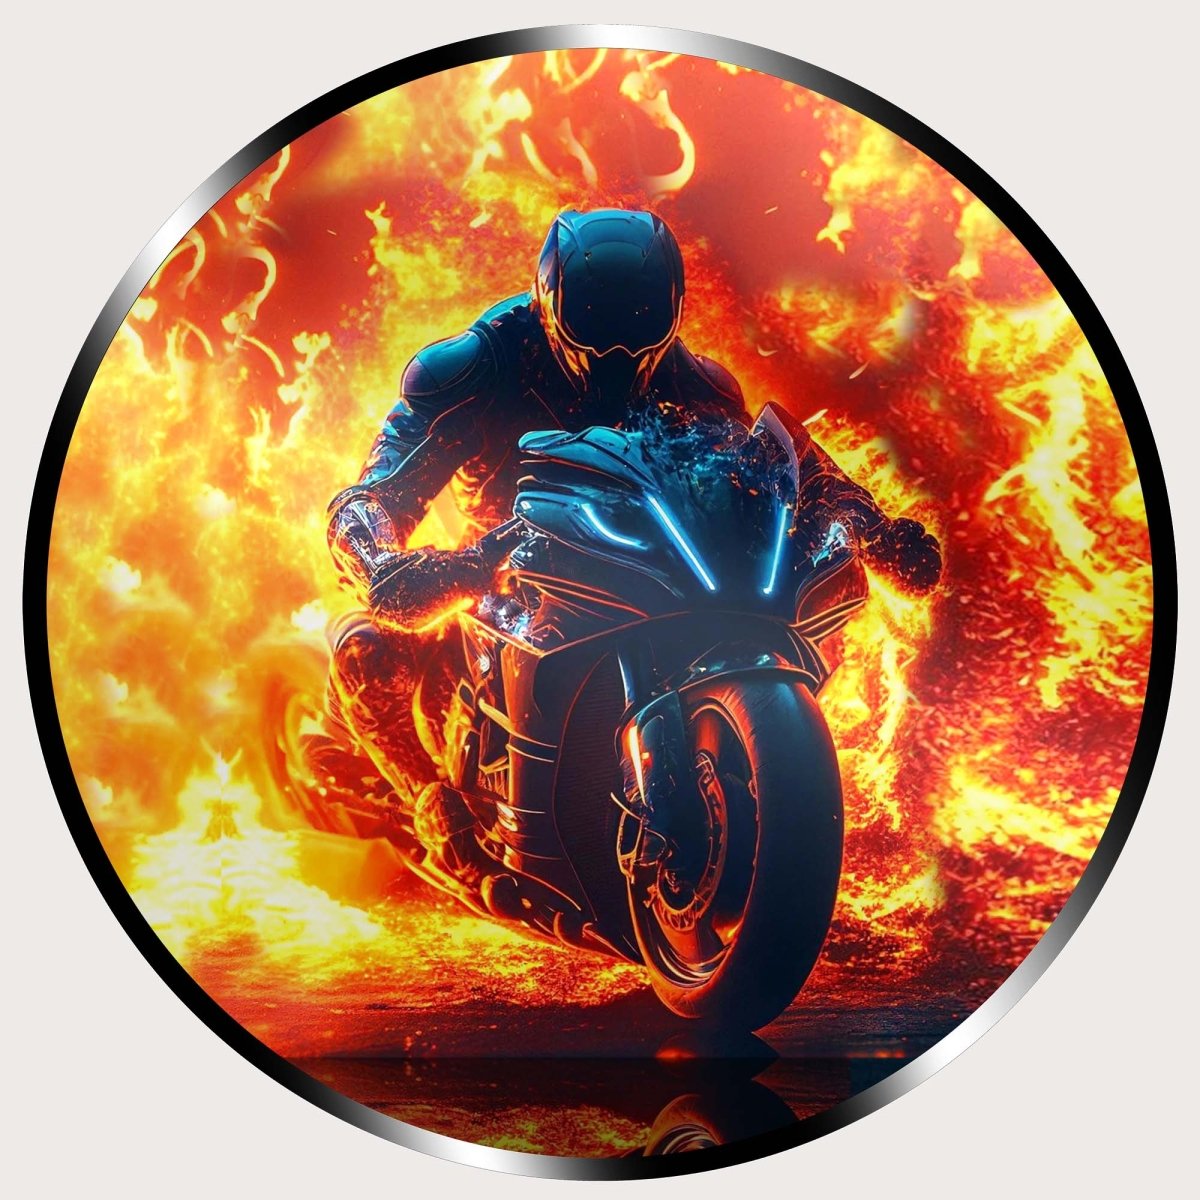 Illuminated Wall Art - Flaming Motorcycle Rider - madaboutneon